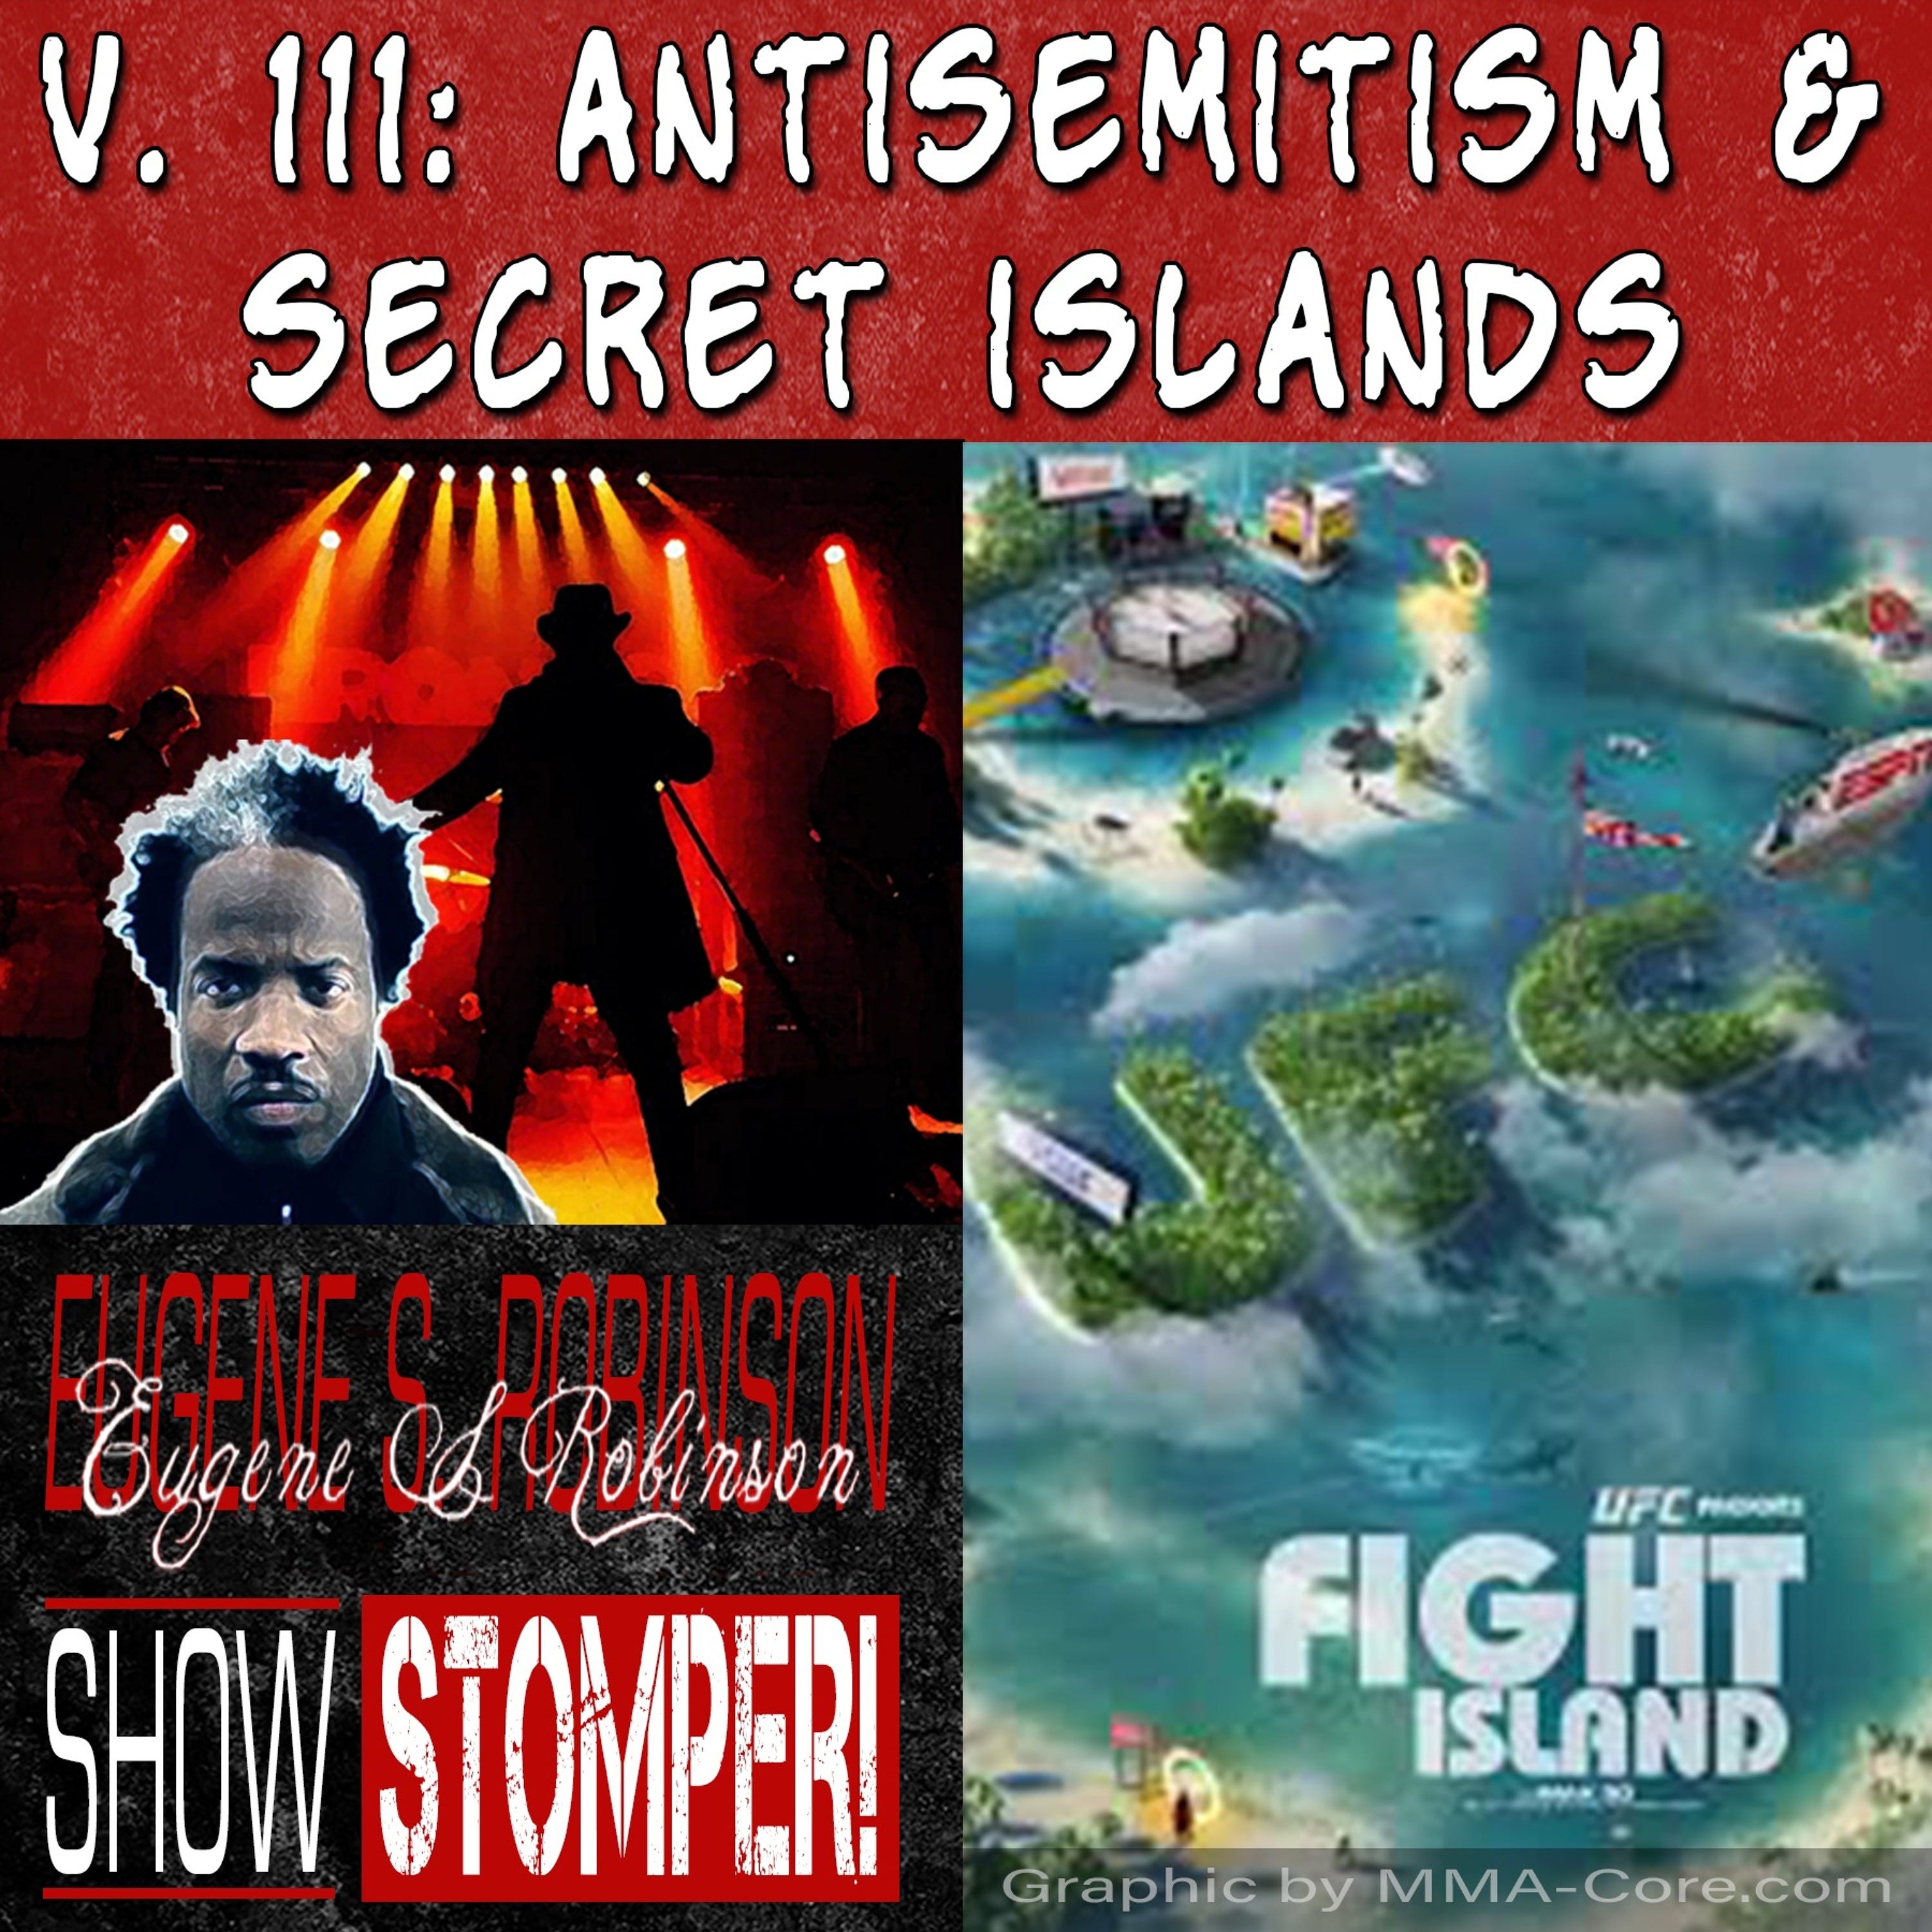 V.111: Antisemitism + Secret Islands All On The Eugene S. Robinson Show Stomper